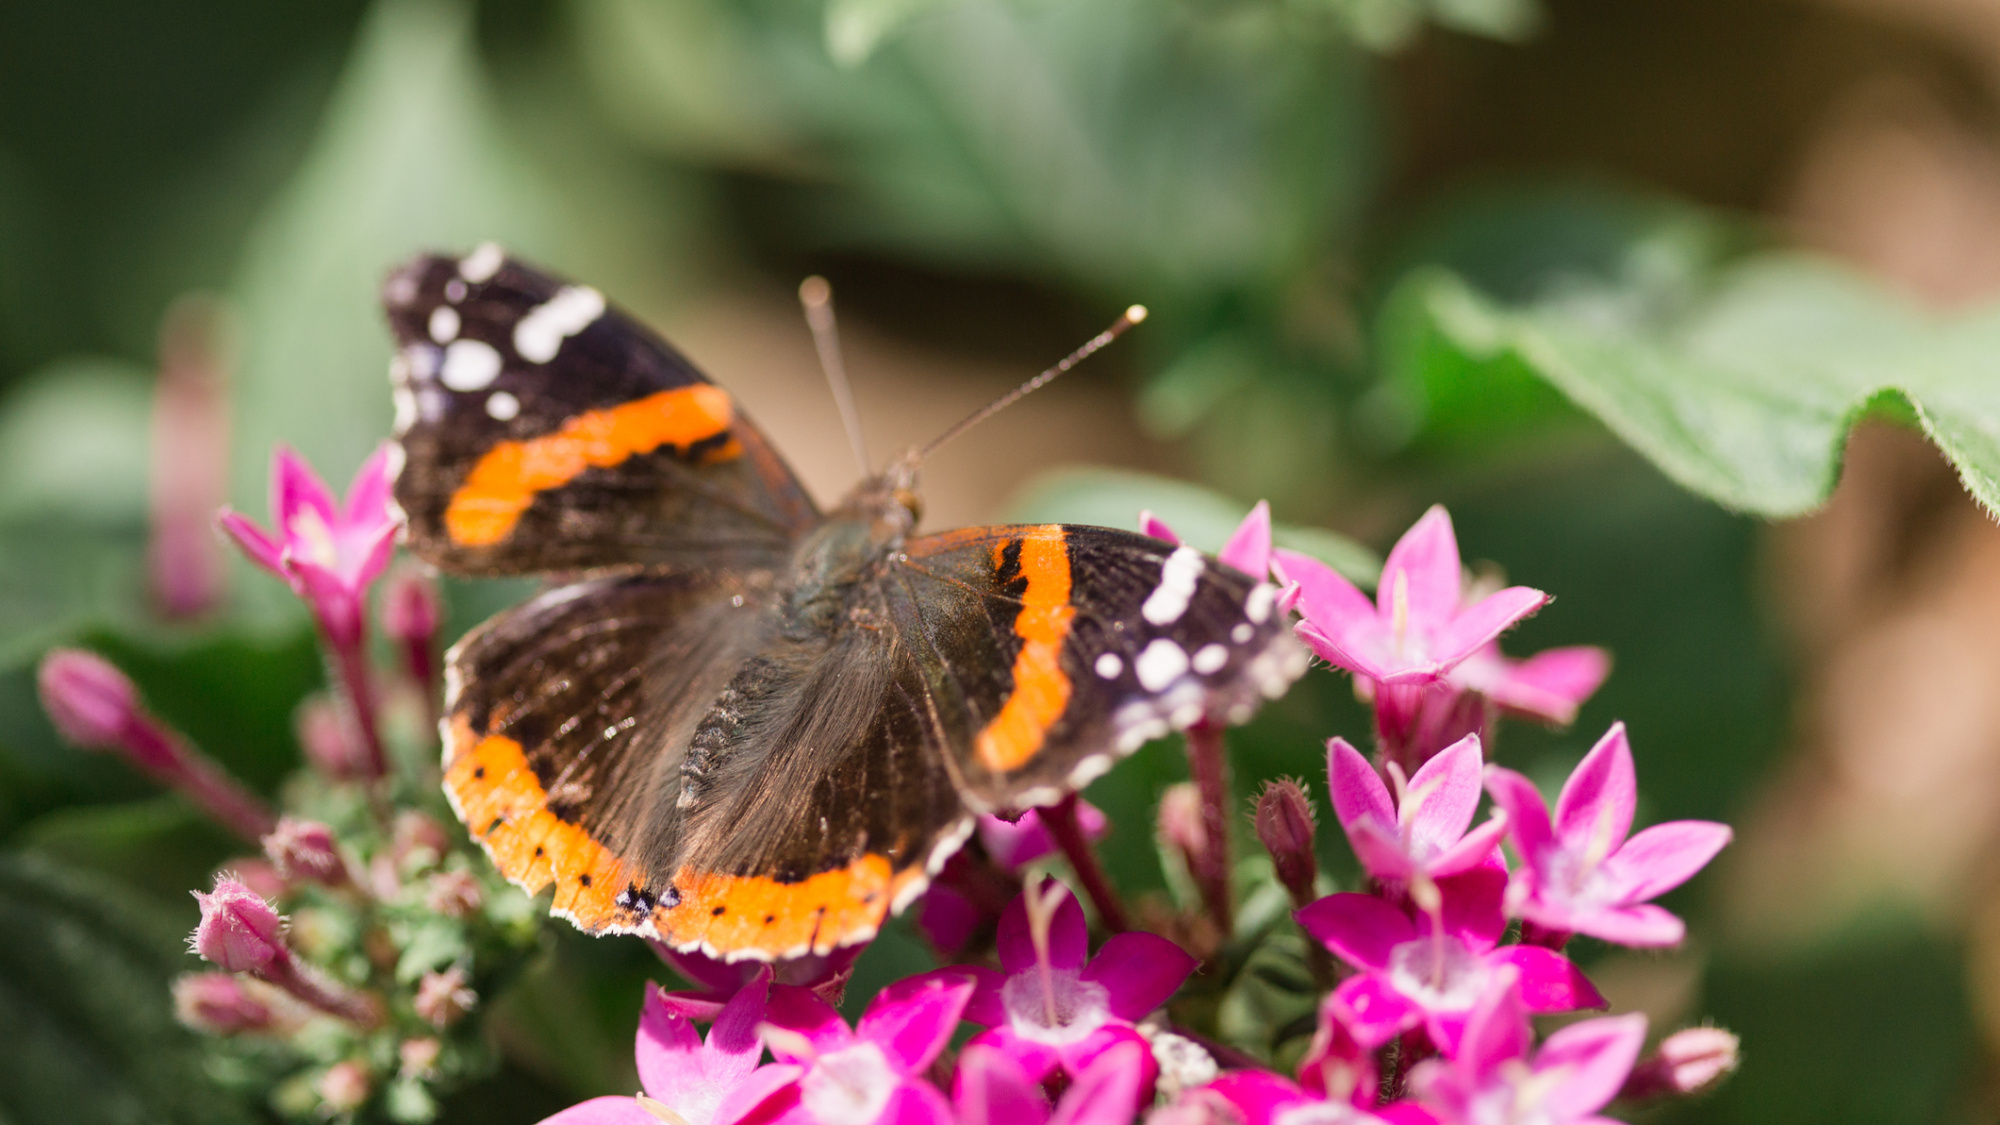 Atalanta vlinder in de tuin | Deli Nature Greenline